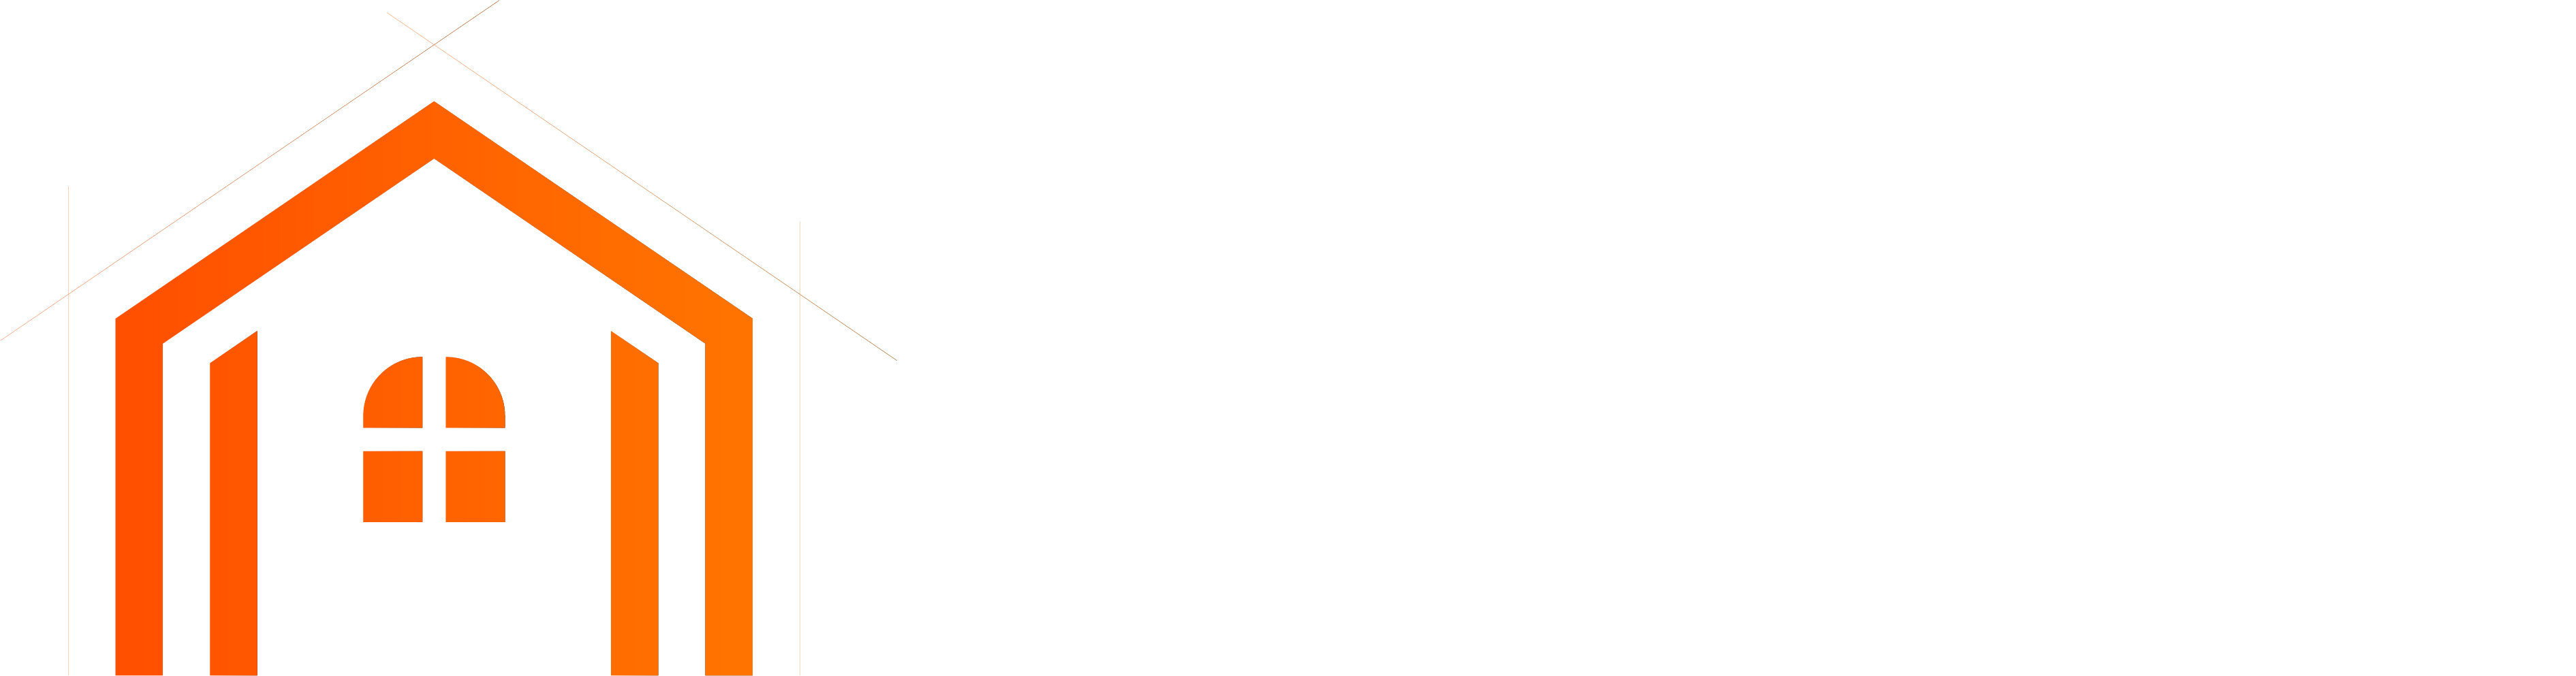 Tura Bygg & Entreprenad AB